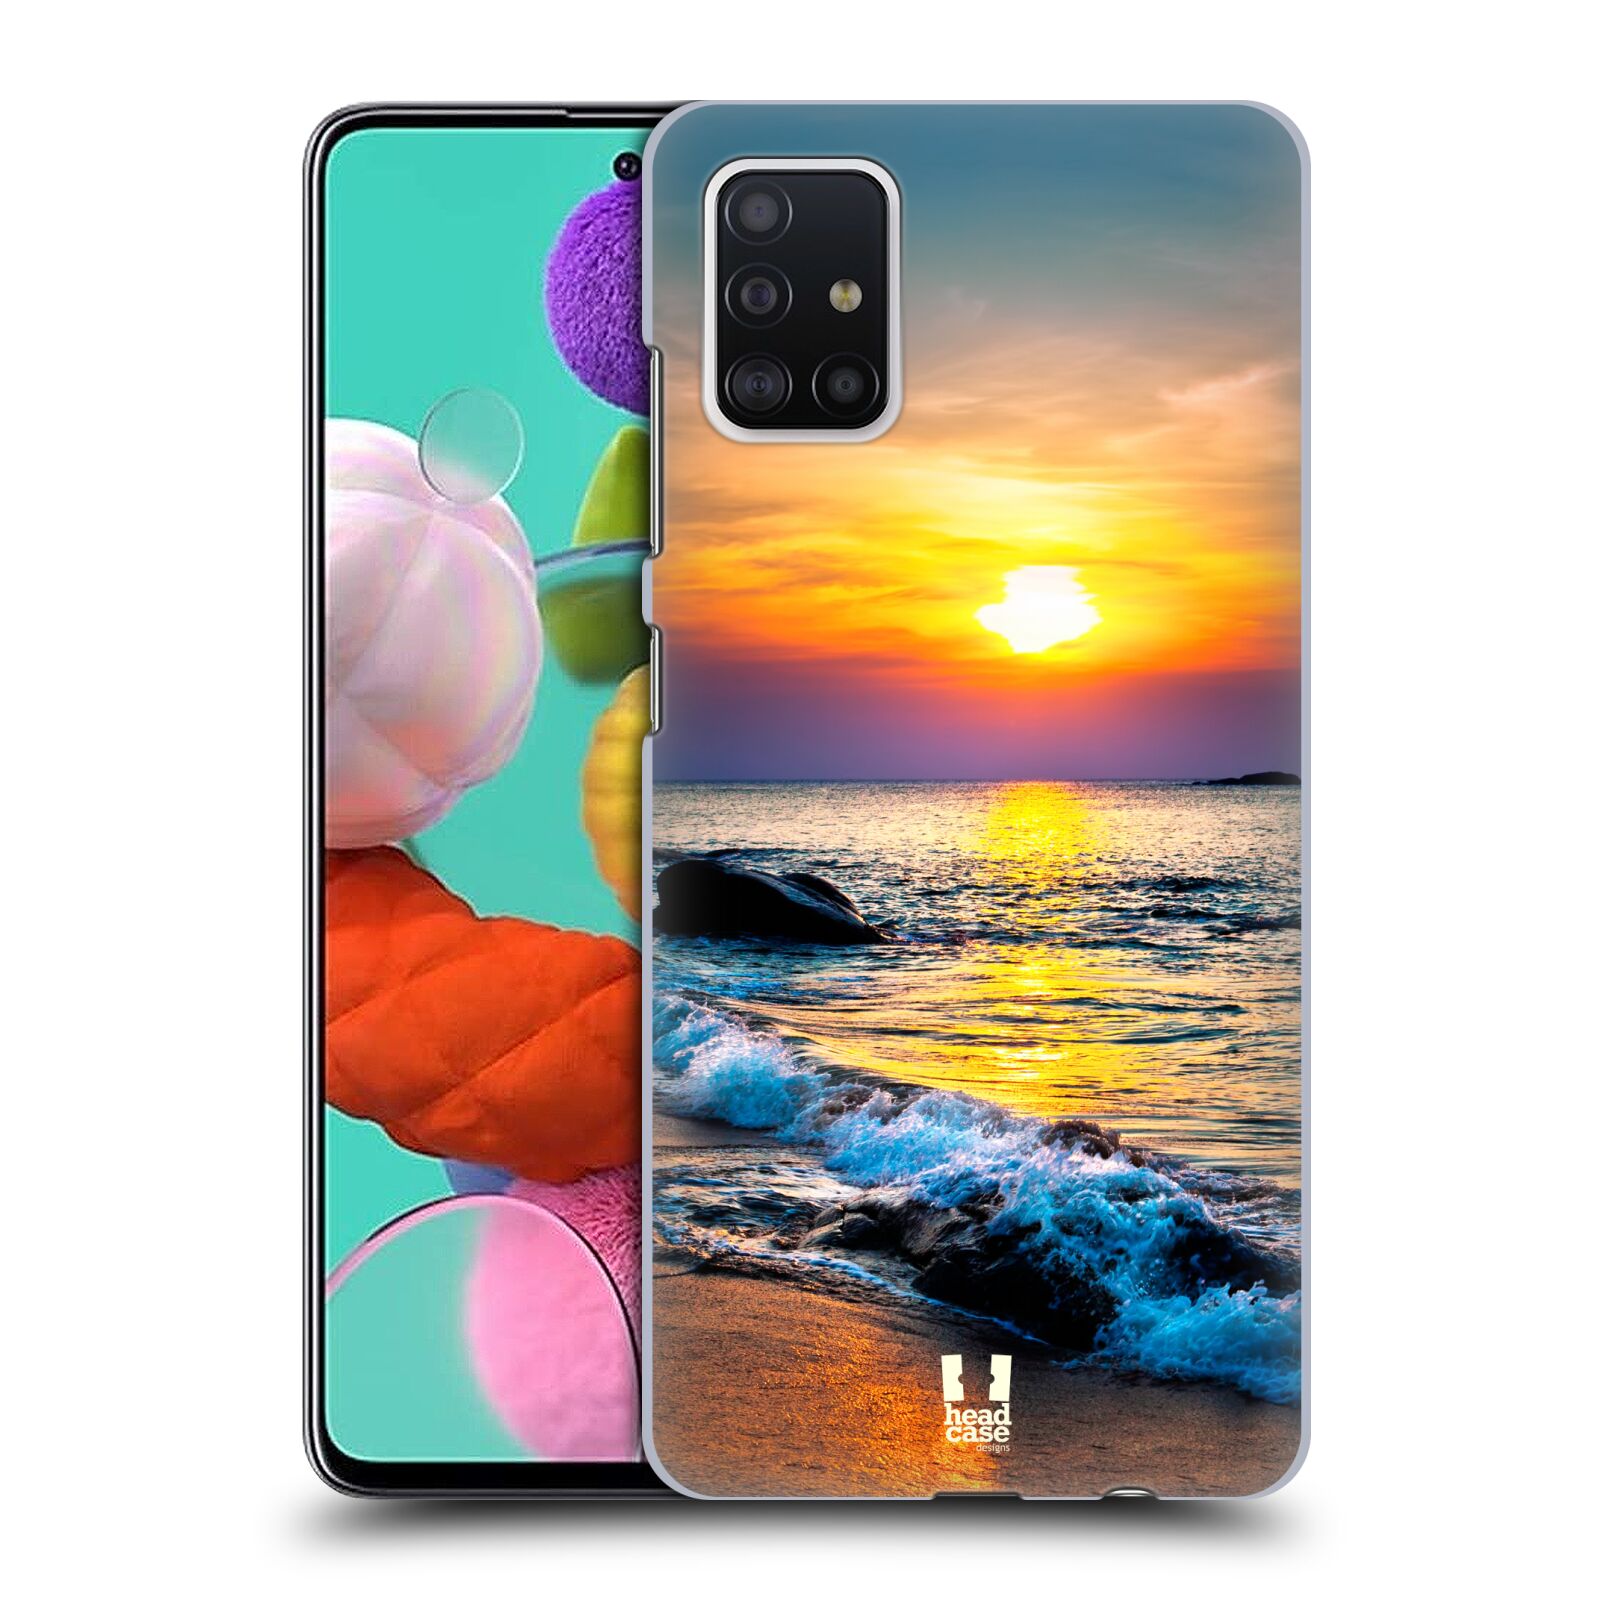 Pouzdro na mobil Samsung Galaxy A51 - HEAD CASE - vzor Pláže a Moře barevný západ slunce